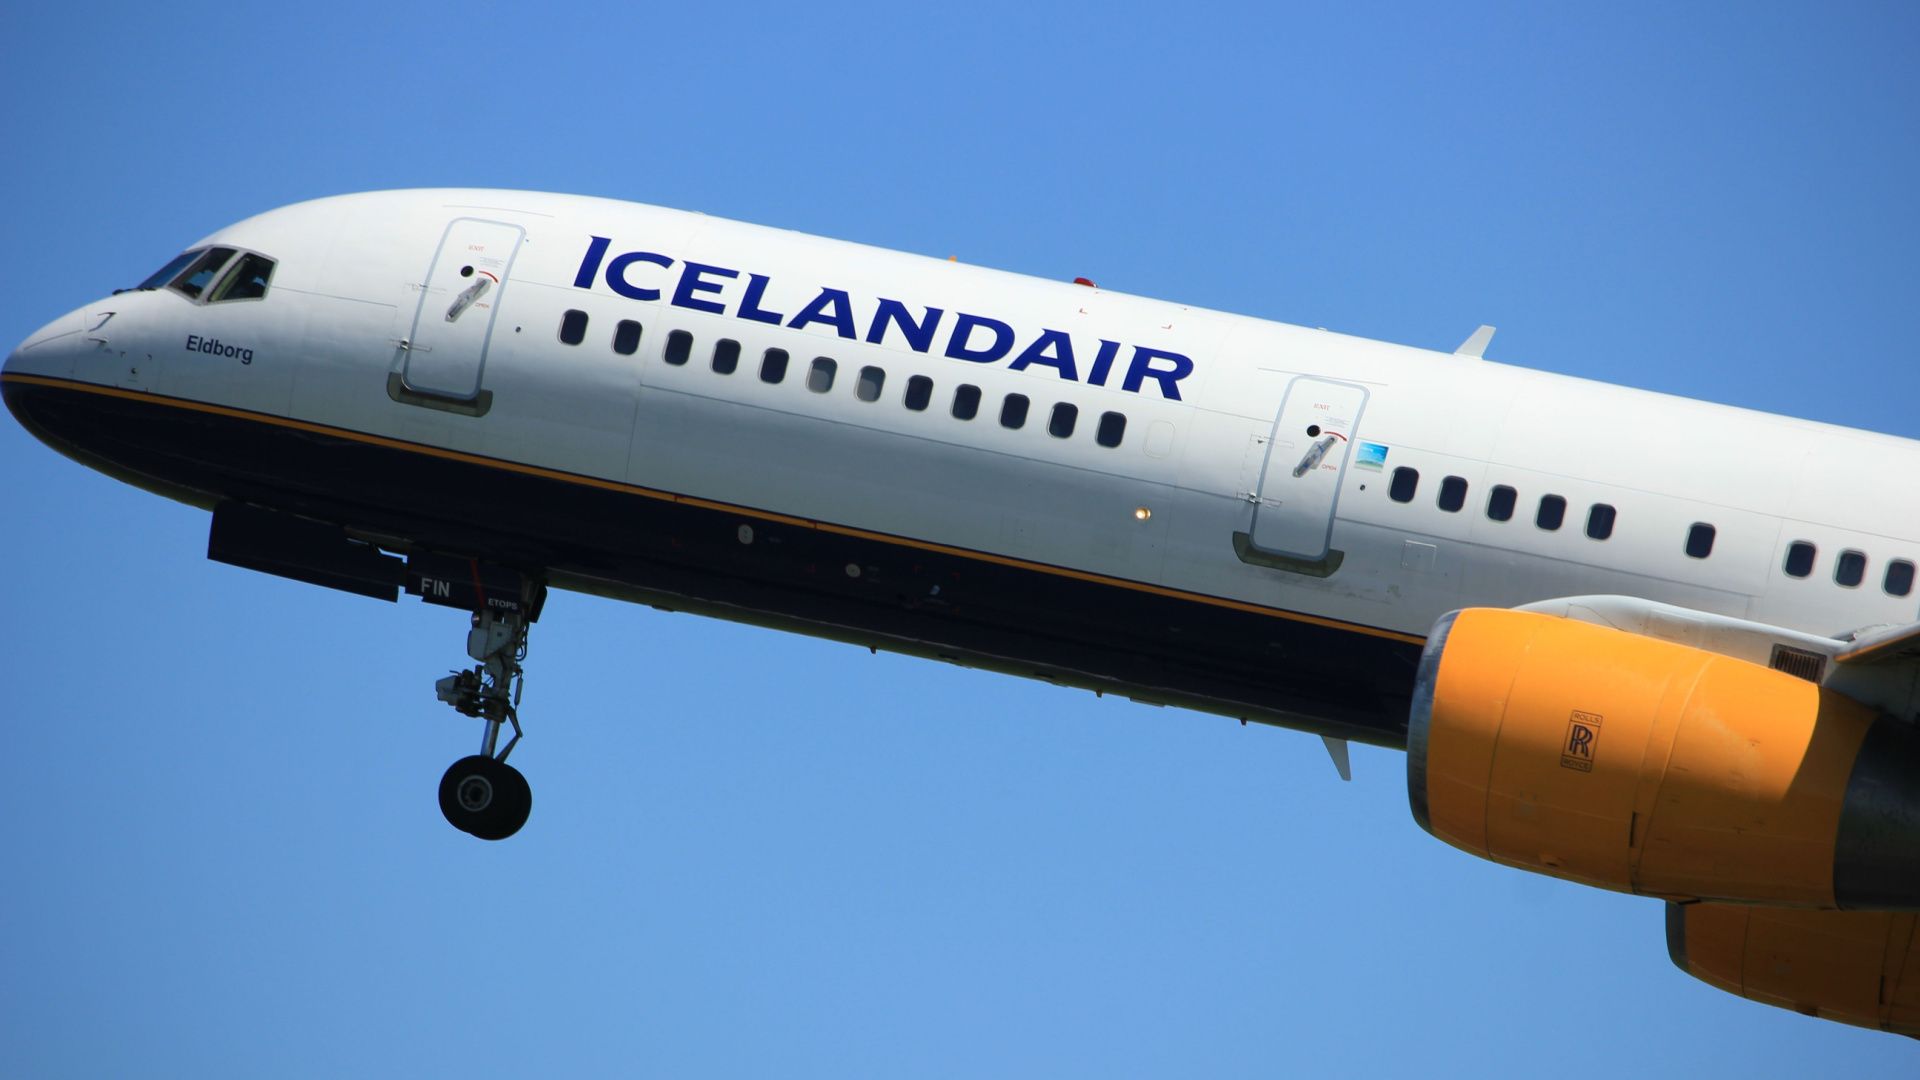 An Icelandair Boeing 757 flying in the sky.